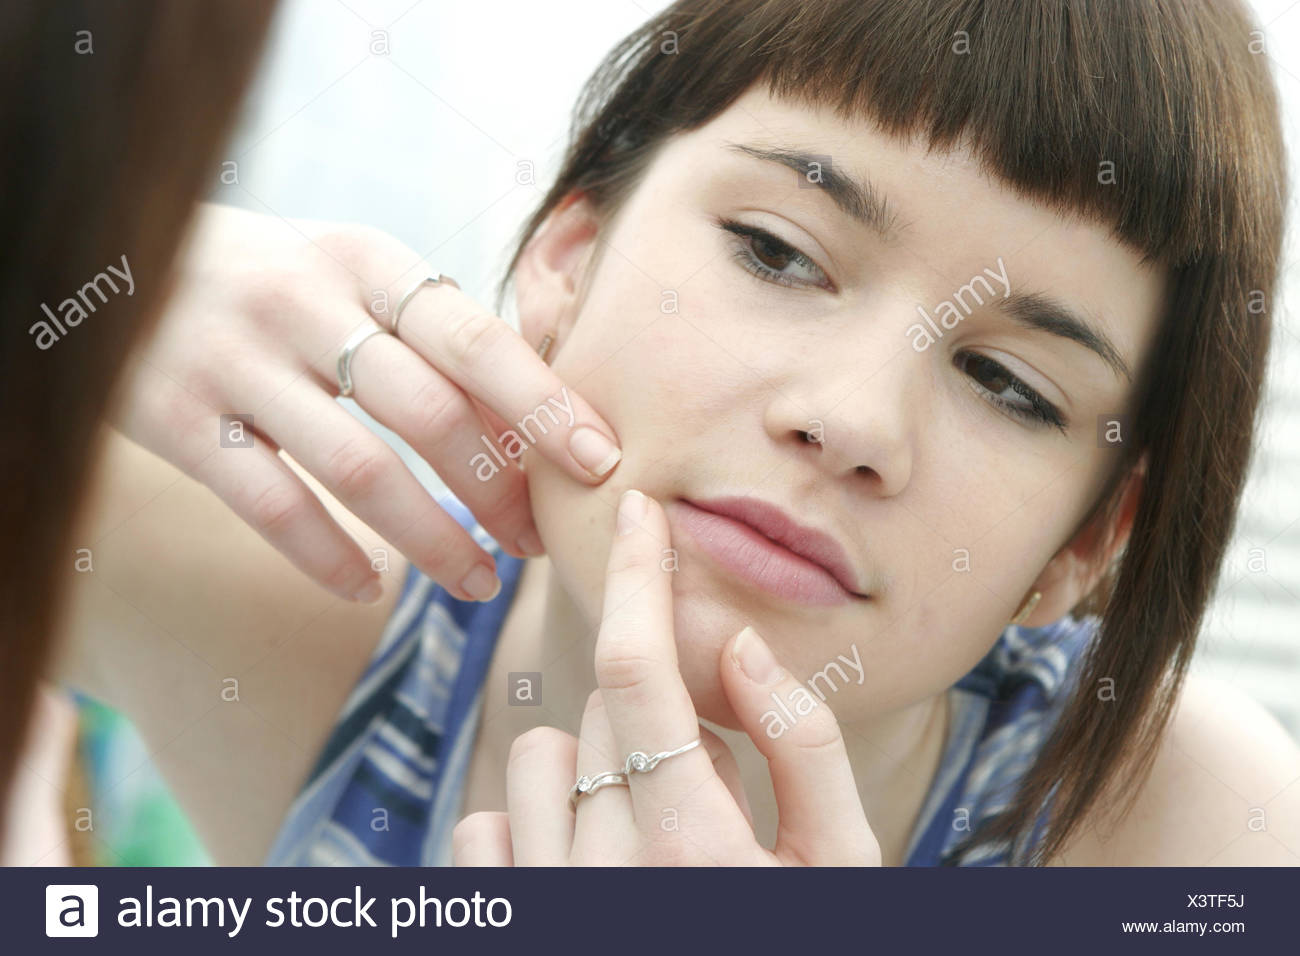 13 16 Jahre Akne Behandlung Detail Erwachsene Finger Gesicht Gesichtsausdruck Gesichtshaut Gesichtspflege Haut Hautpf Stock Photo Alamy